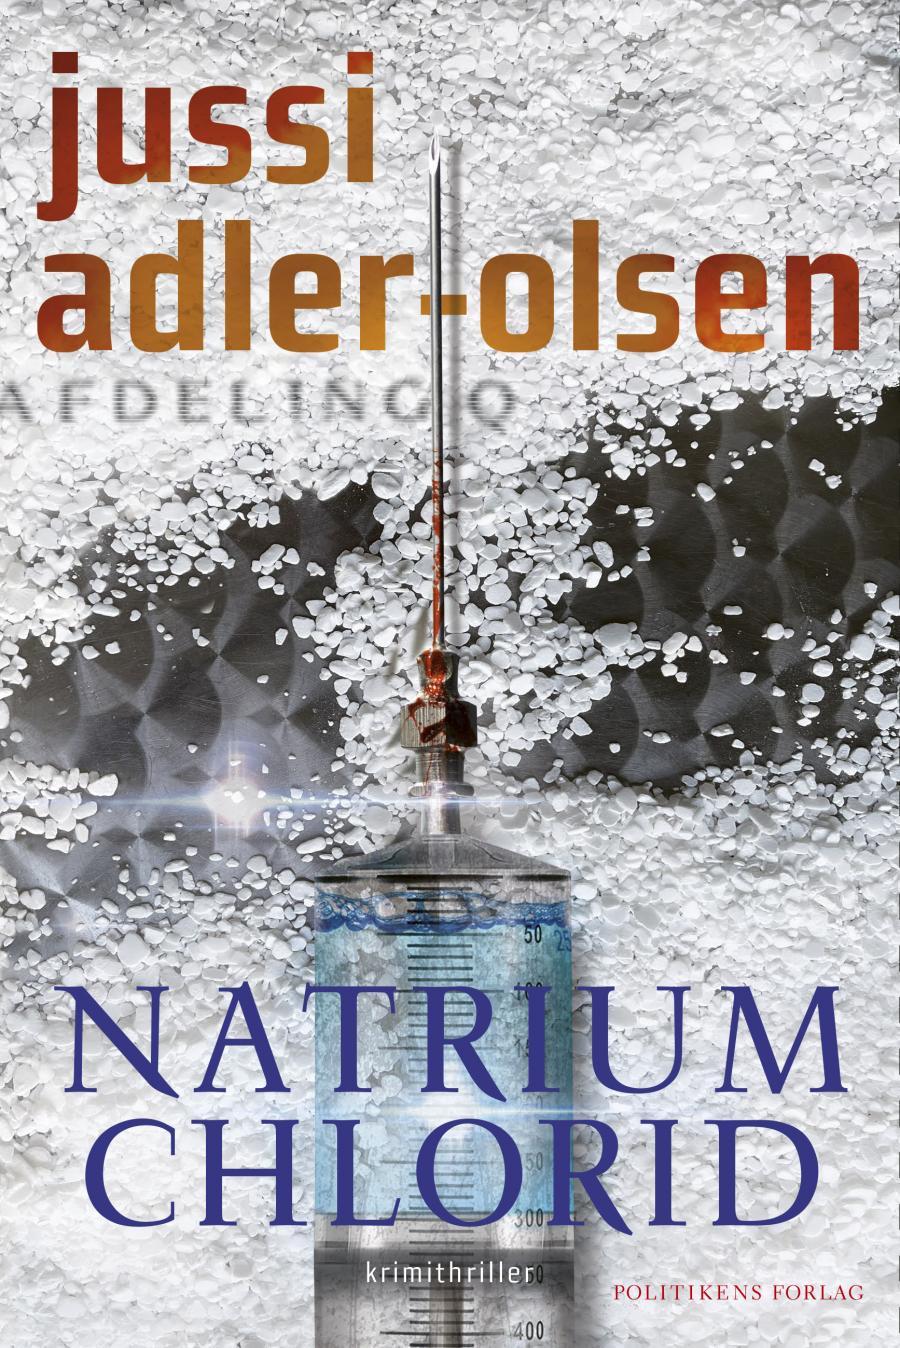 Forside af Jussi Adle-Olsens nye bog hvorpå der er en kanyle på en baggrund af salt